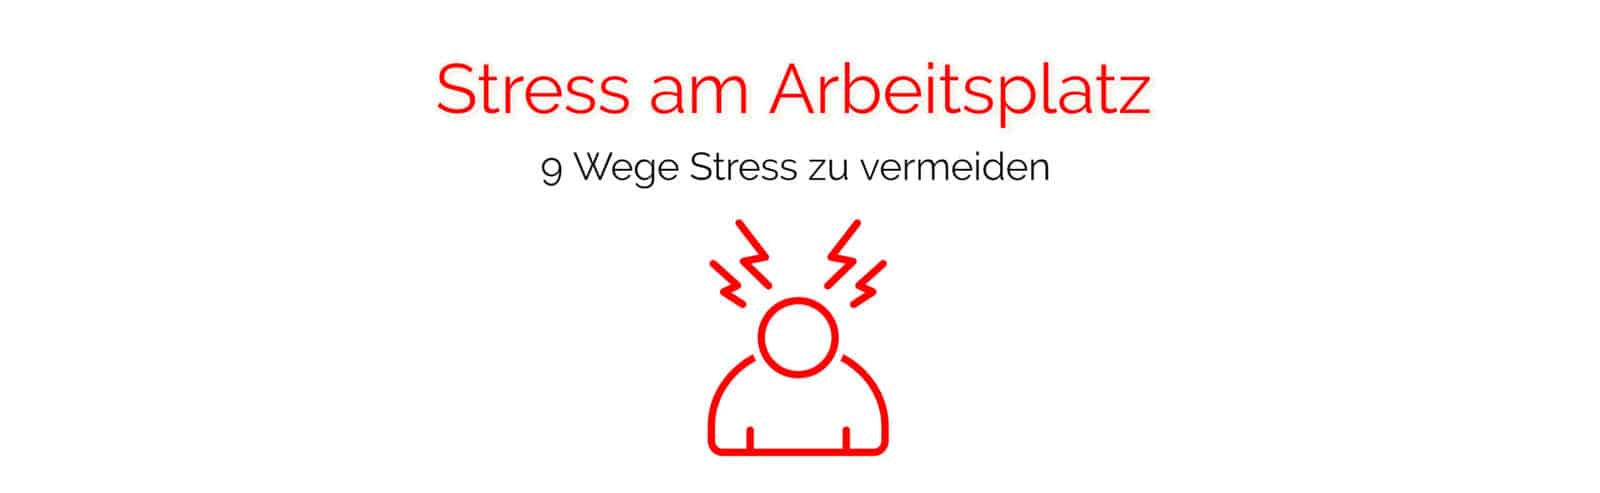 Stress am Arbeitsplatz vermeiden